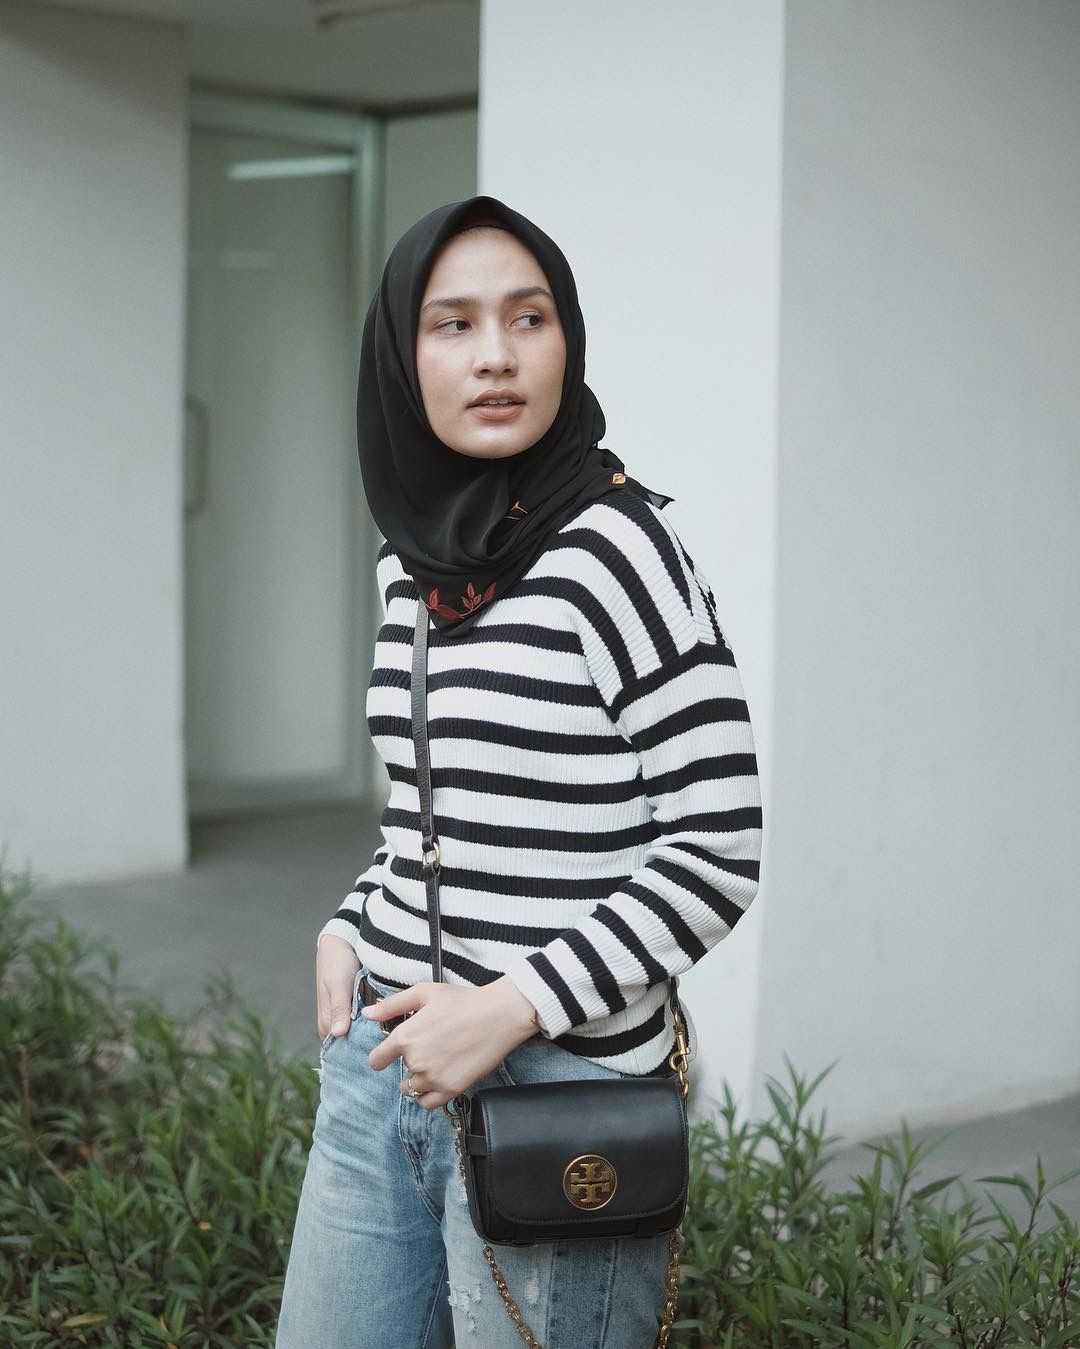  Ootd Hijab 2019 Casual Model Hijab Terbaru